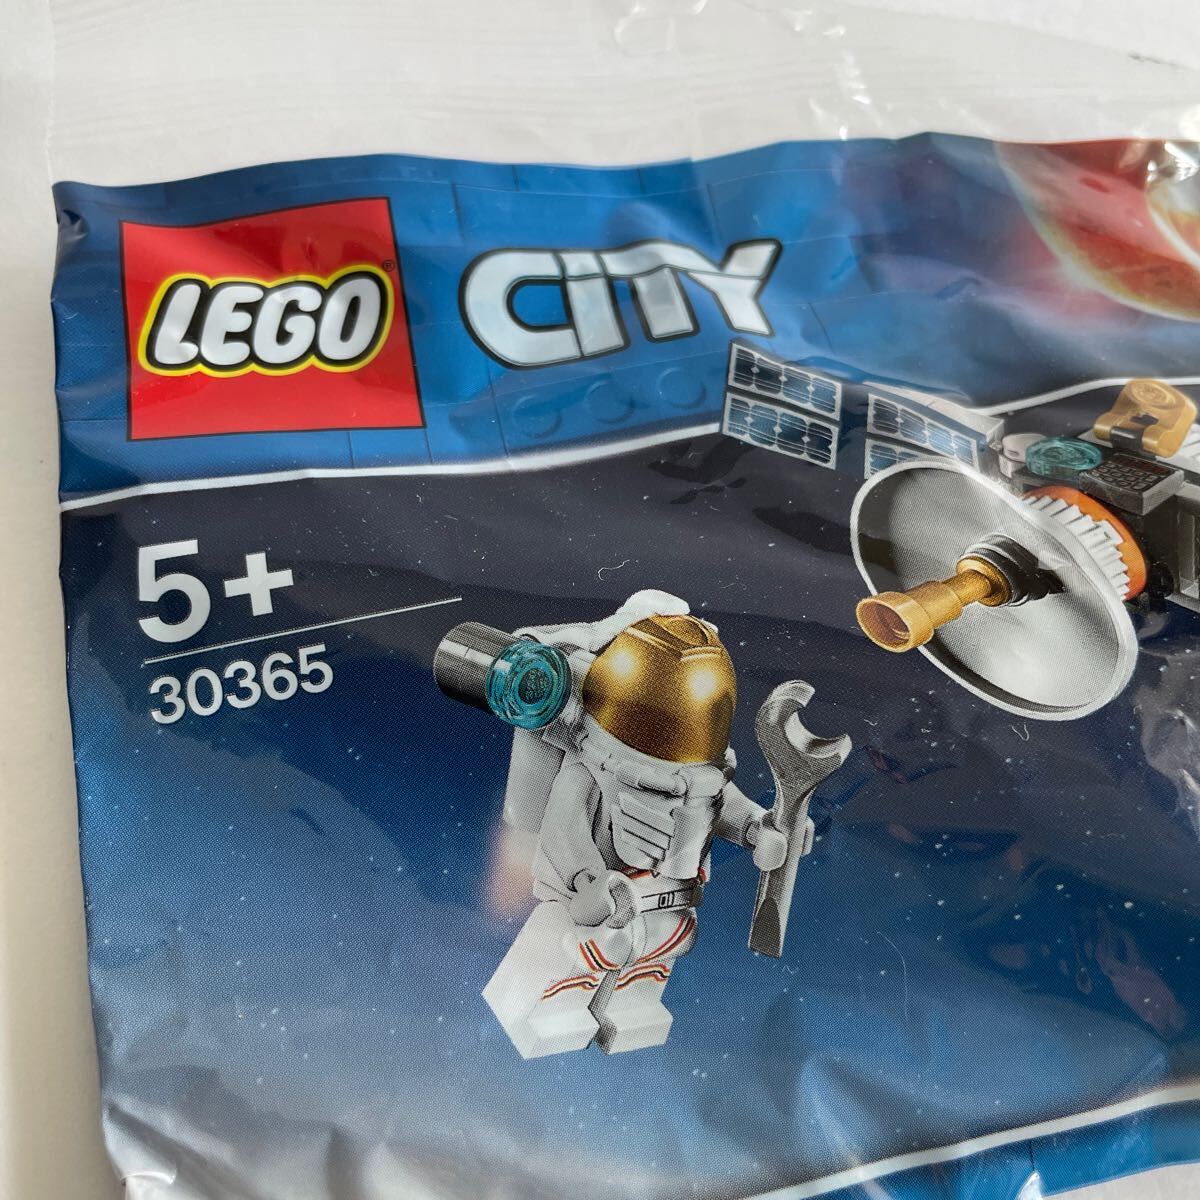 LEGO レゴ 30365 レゴシティ 宇宙飛行士と人工衛星 ミニキット ミニポリパック ミニフィグ 宇宙 NASA スペースワークス 即決 送料込 CITY 